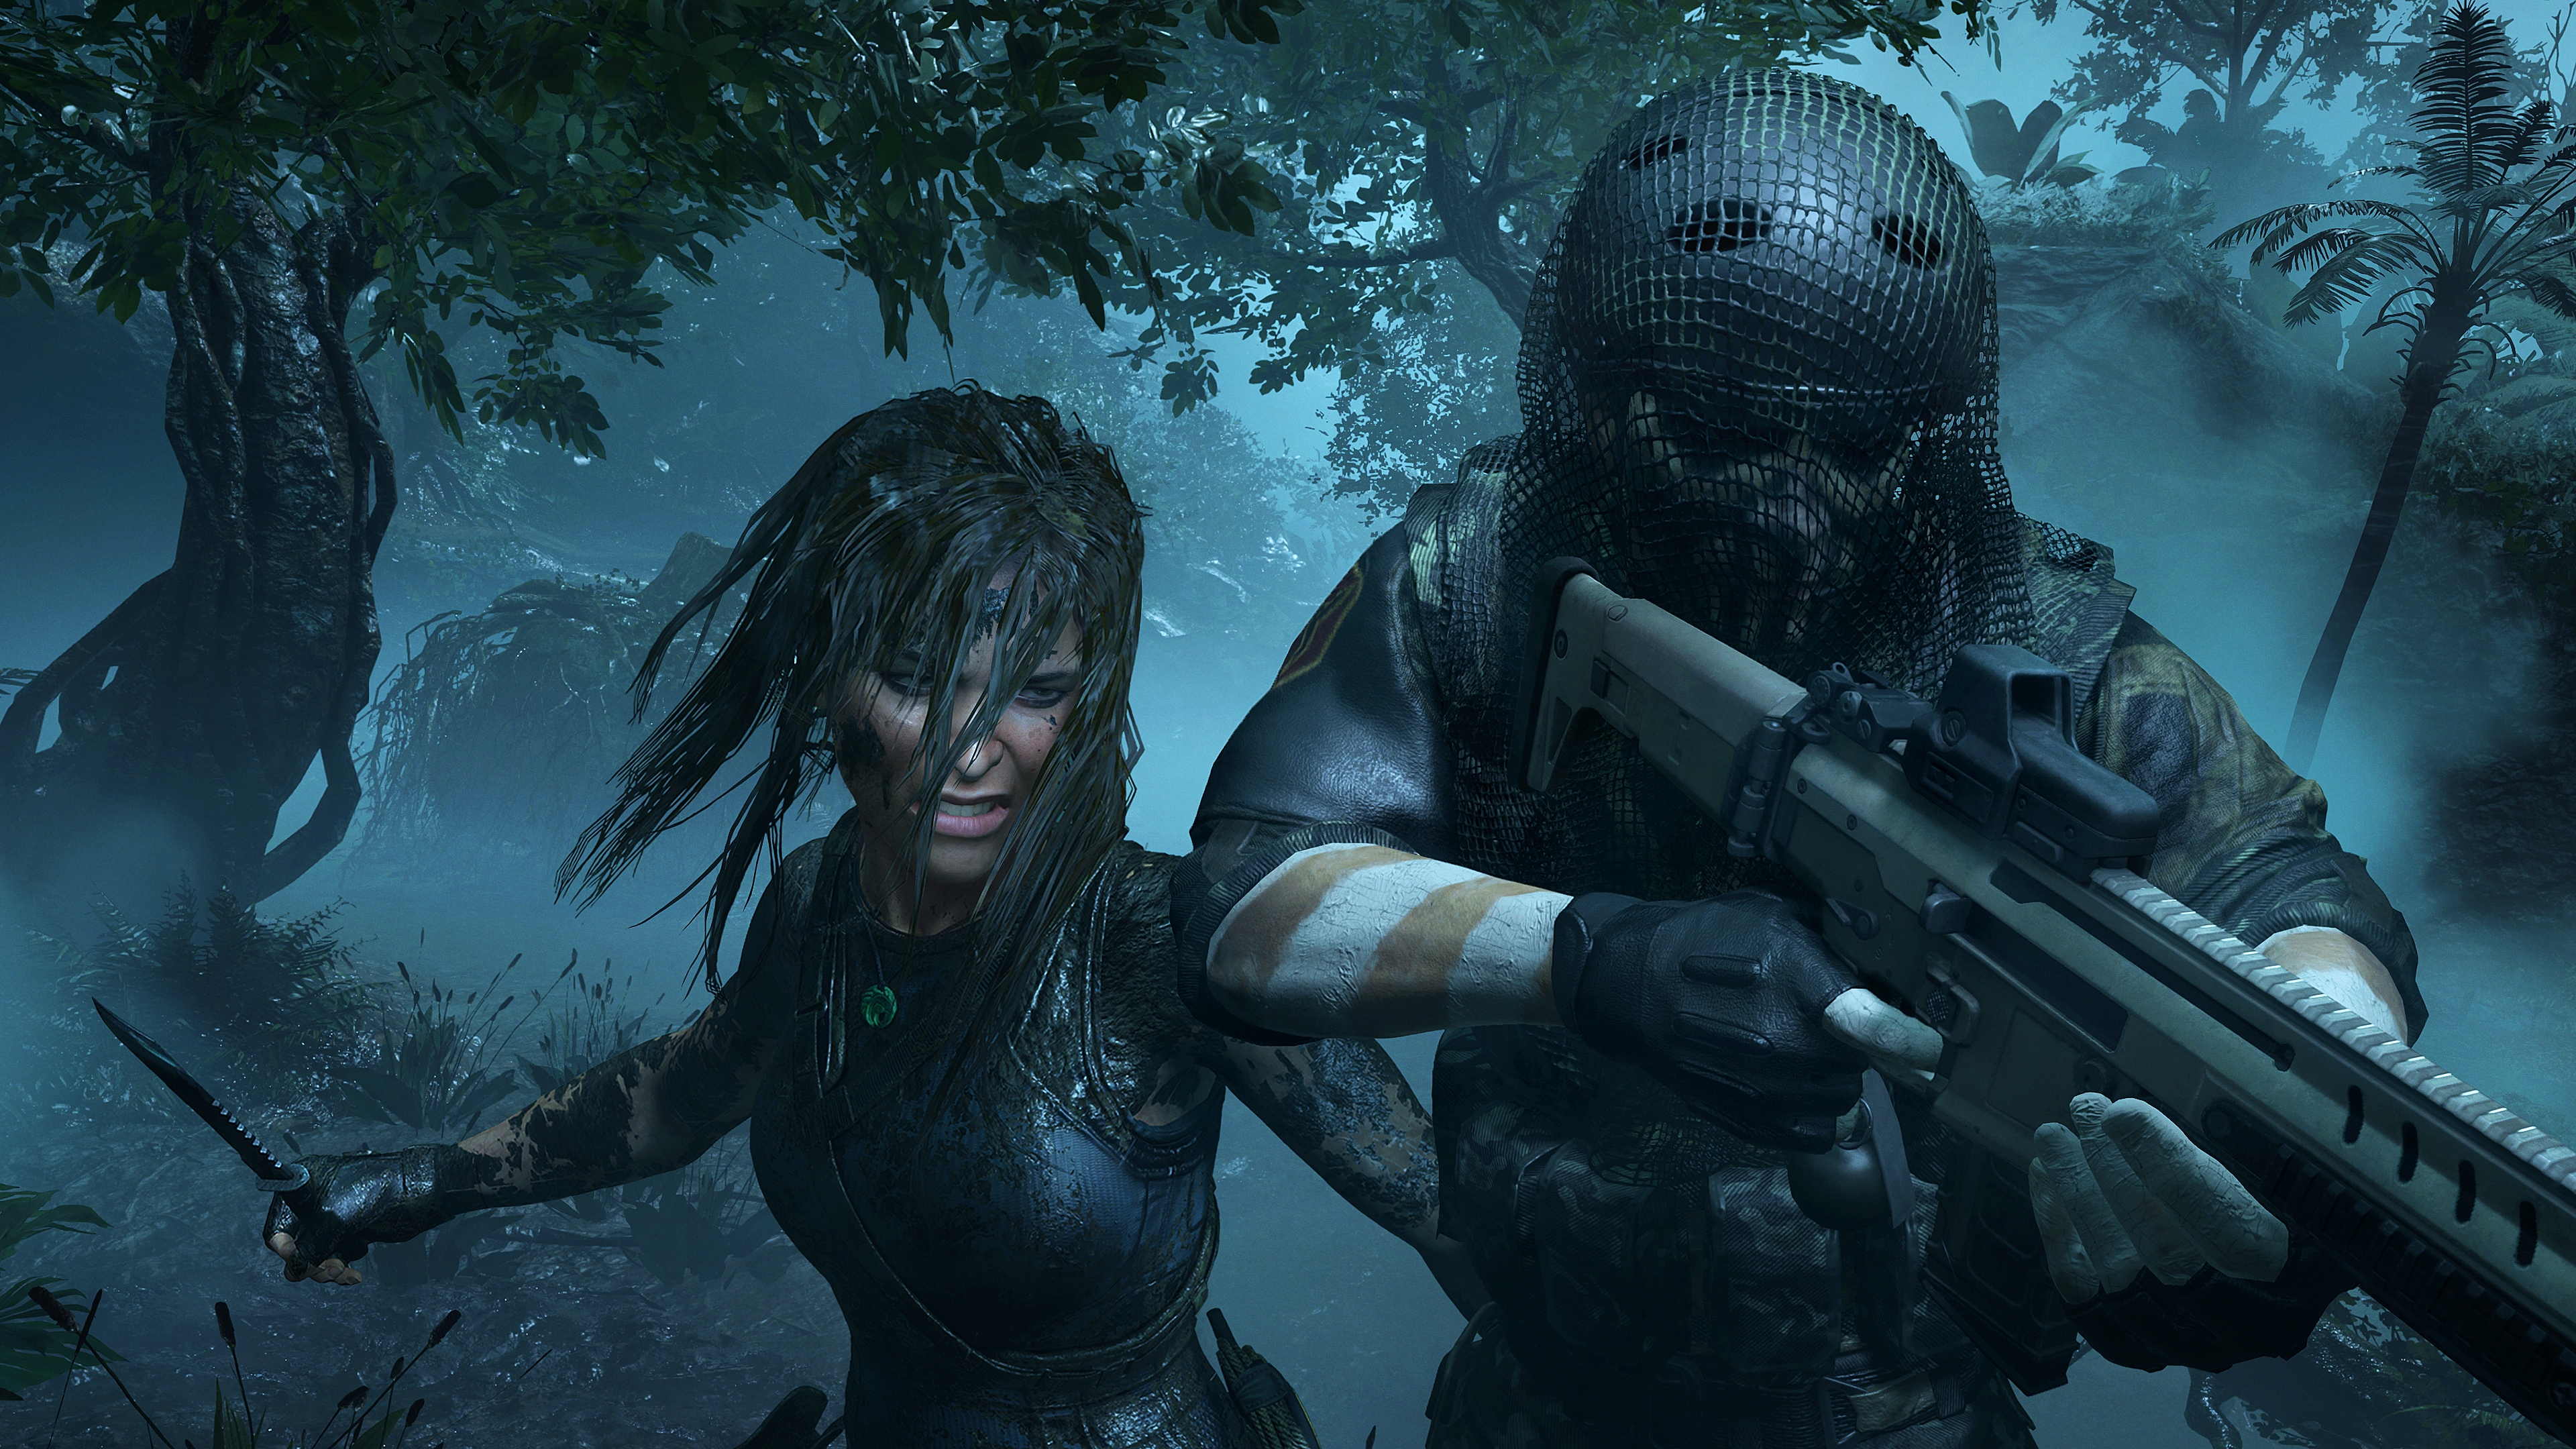 Immagine pubblicata in relazione al seguente contenuto: Nuovi gameplay trailers e screenshots del game Shadow of the Tomb Raider | Nome immagine: news28511_Shadow-of-the-Tomb-Raider-Screenshot_3.jpg